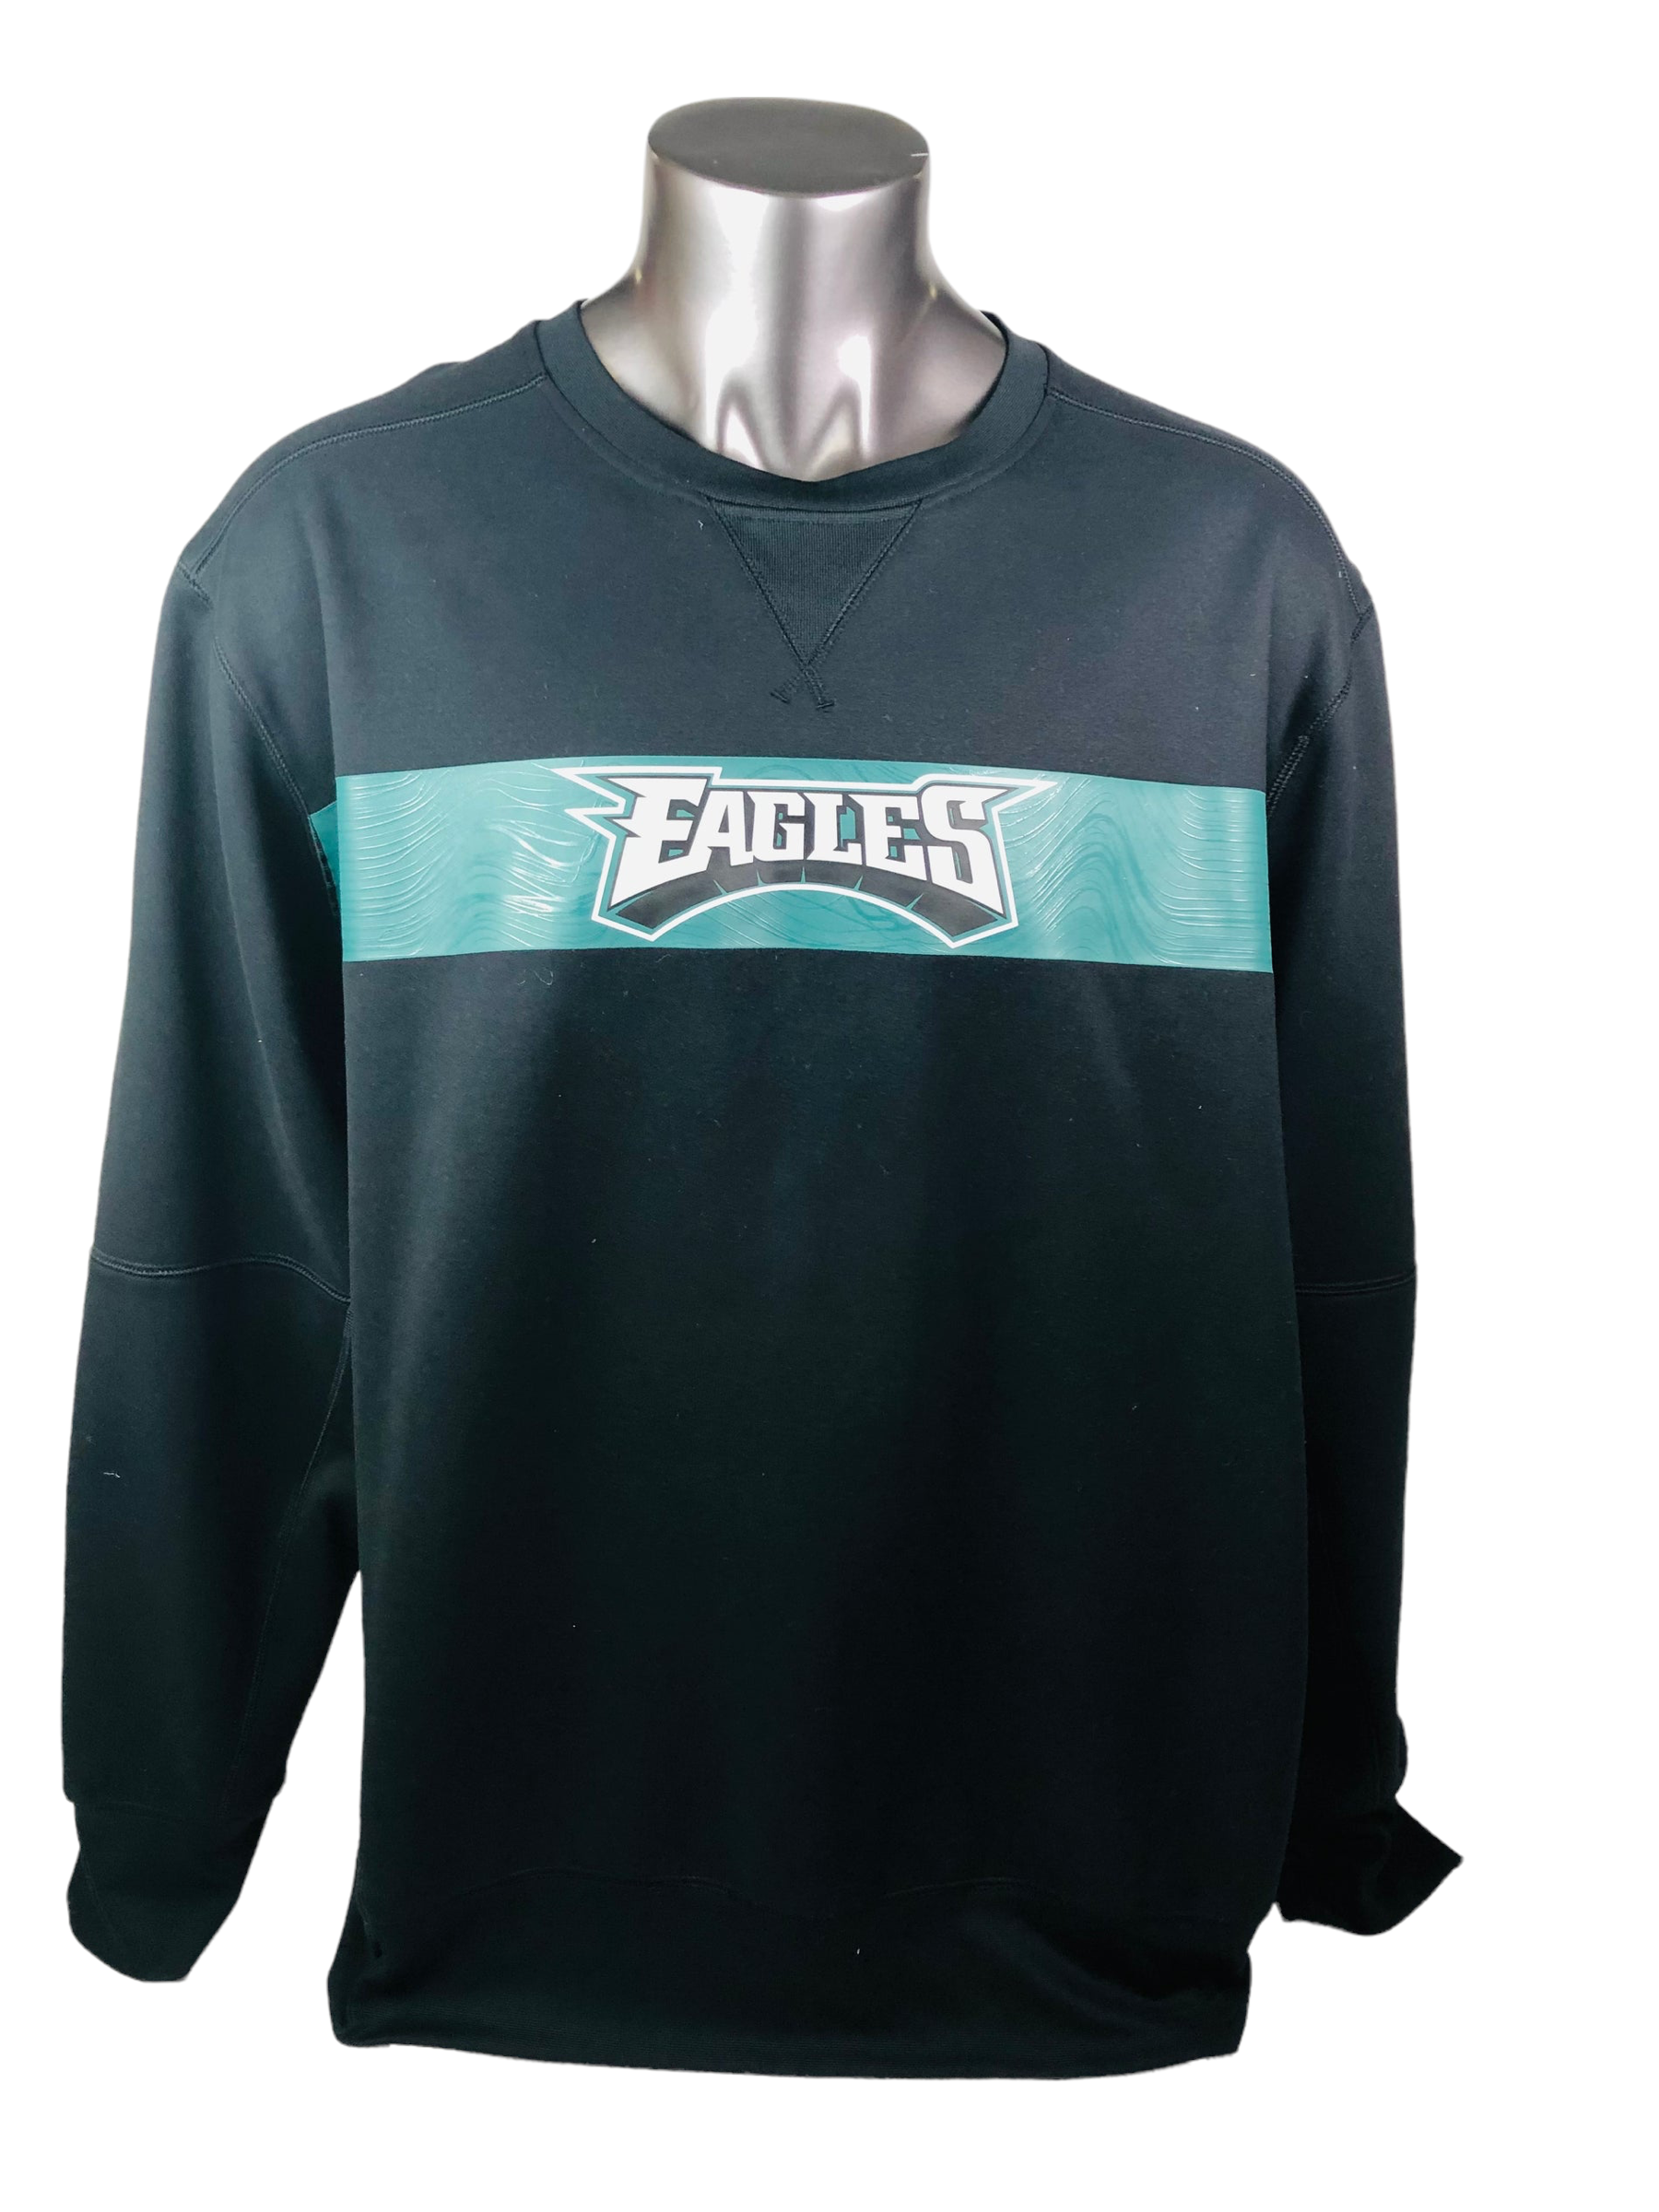 Philadelphia Eagles Sweatshirt Vintage 